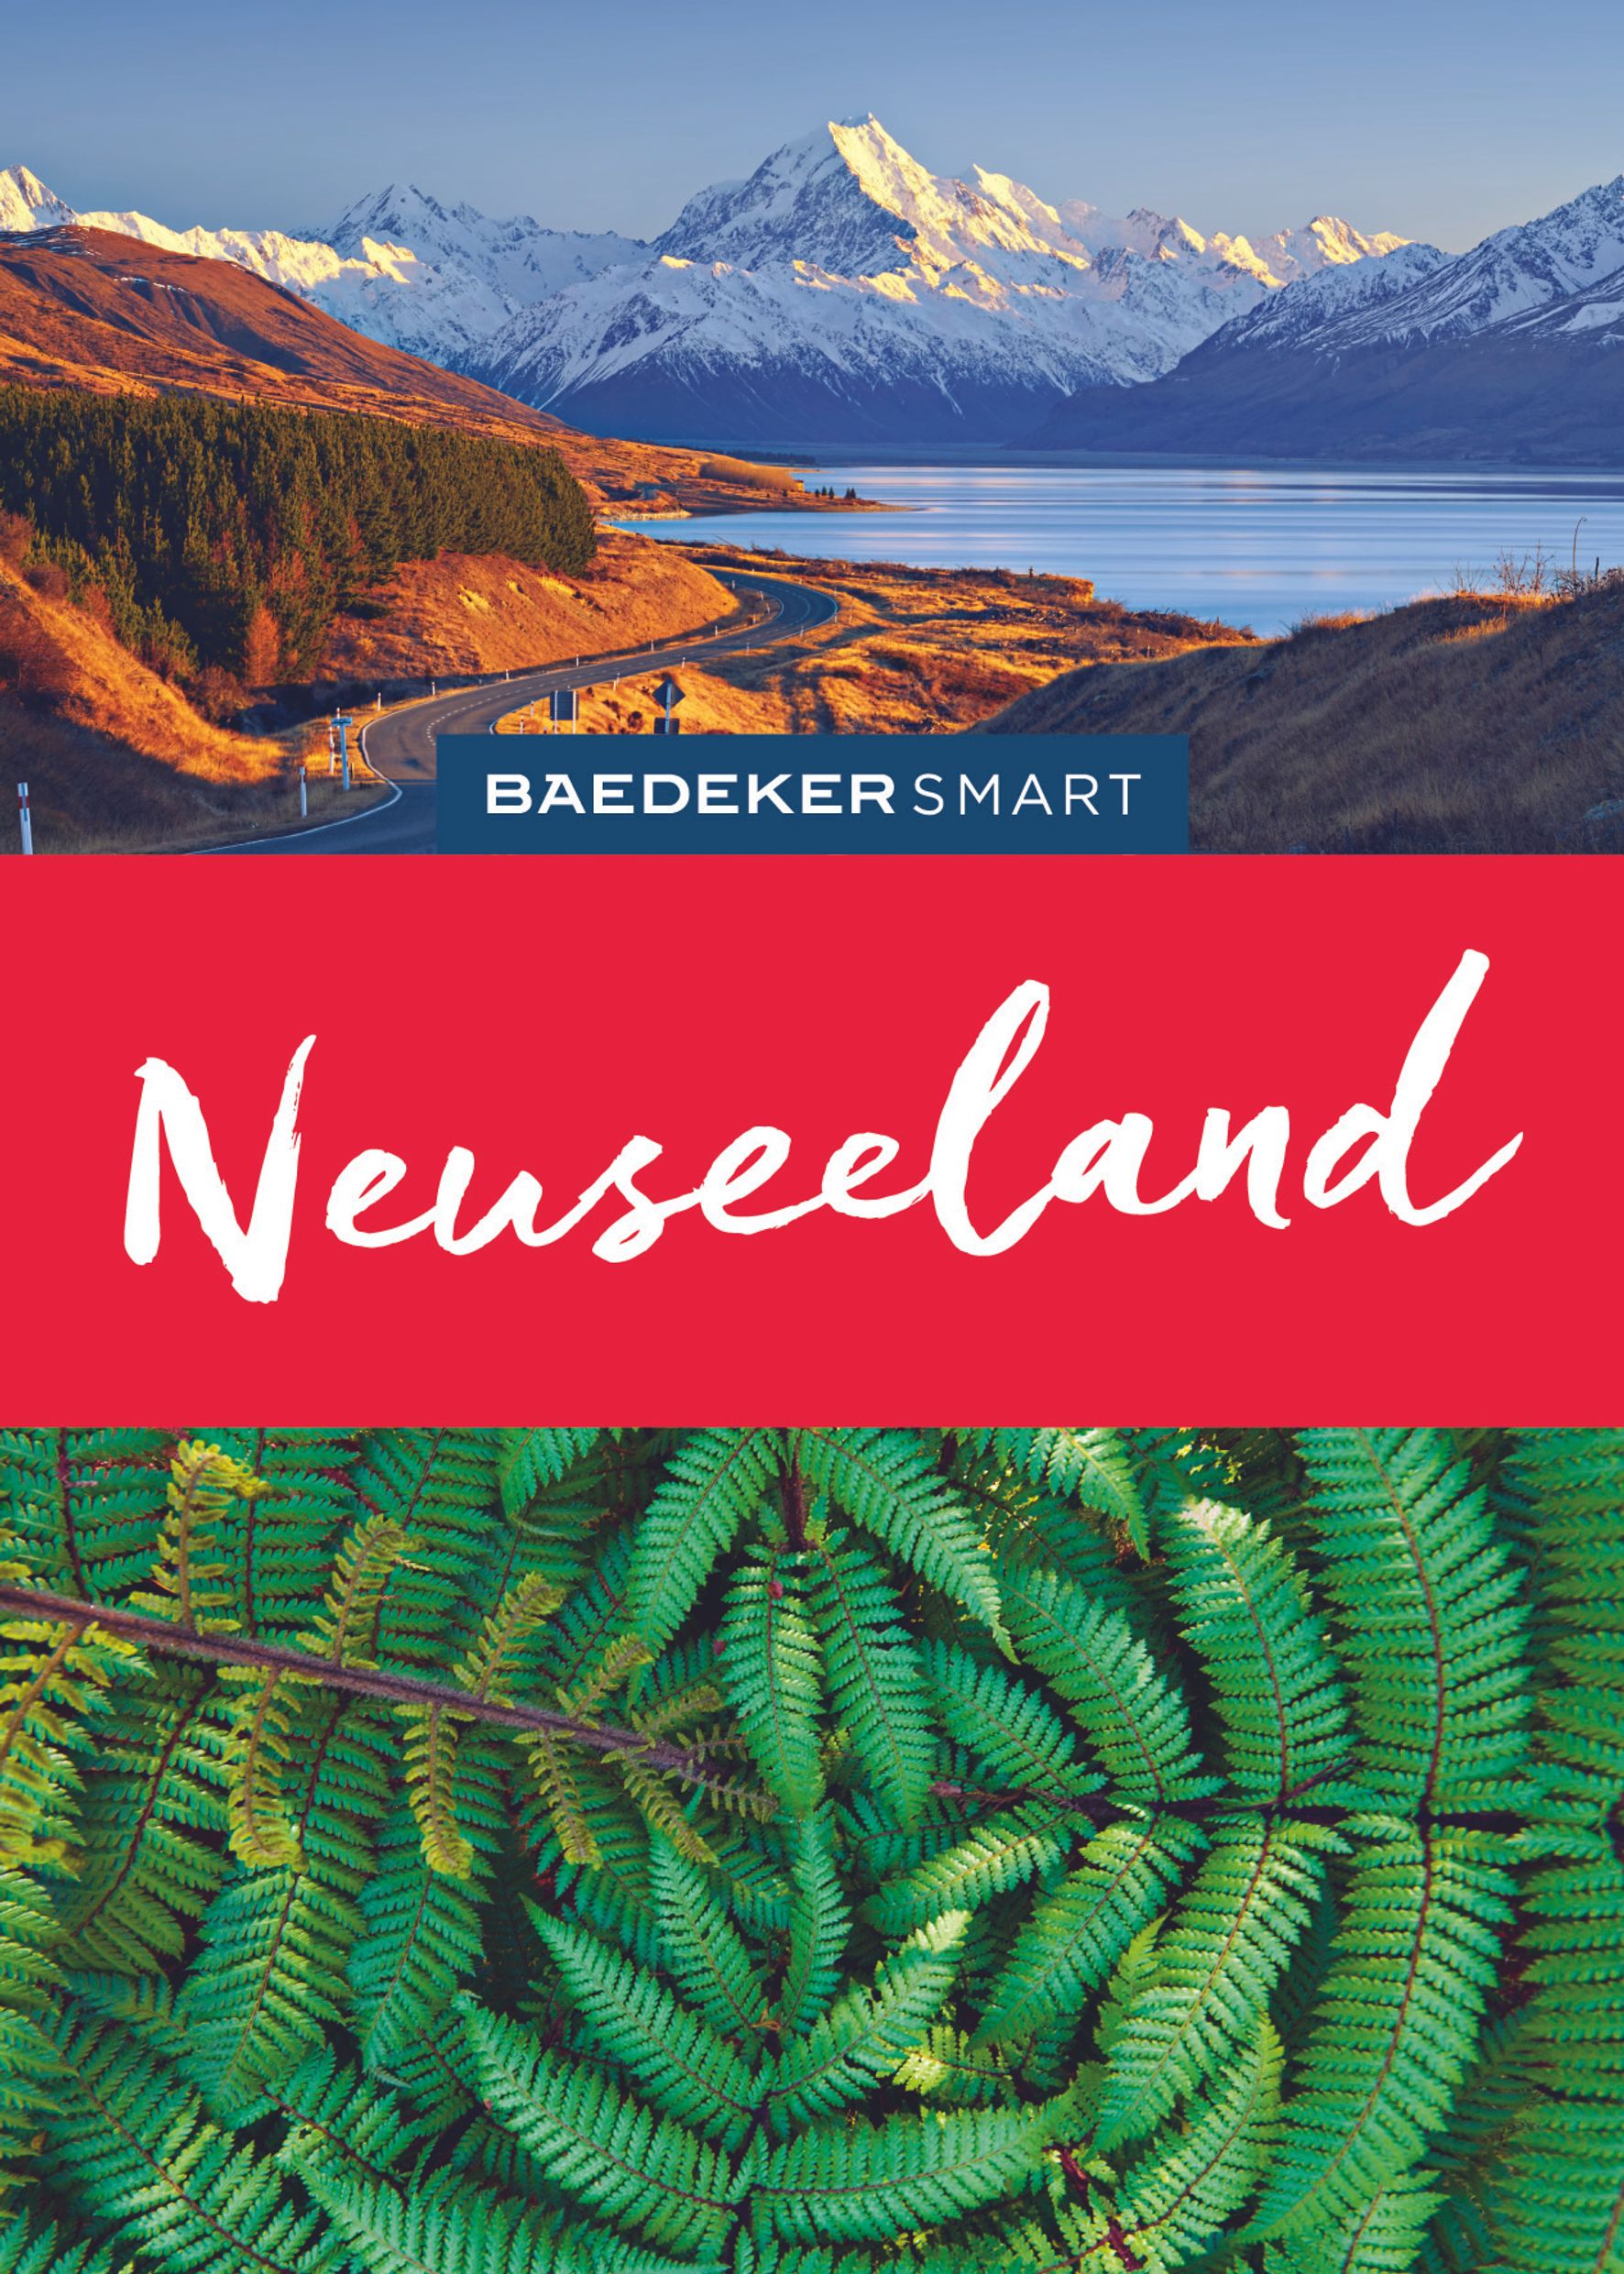 Baedeker Neuseeland (eBook)